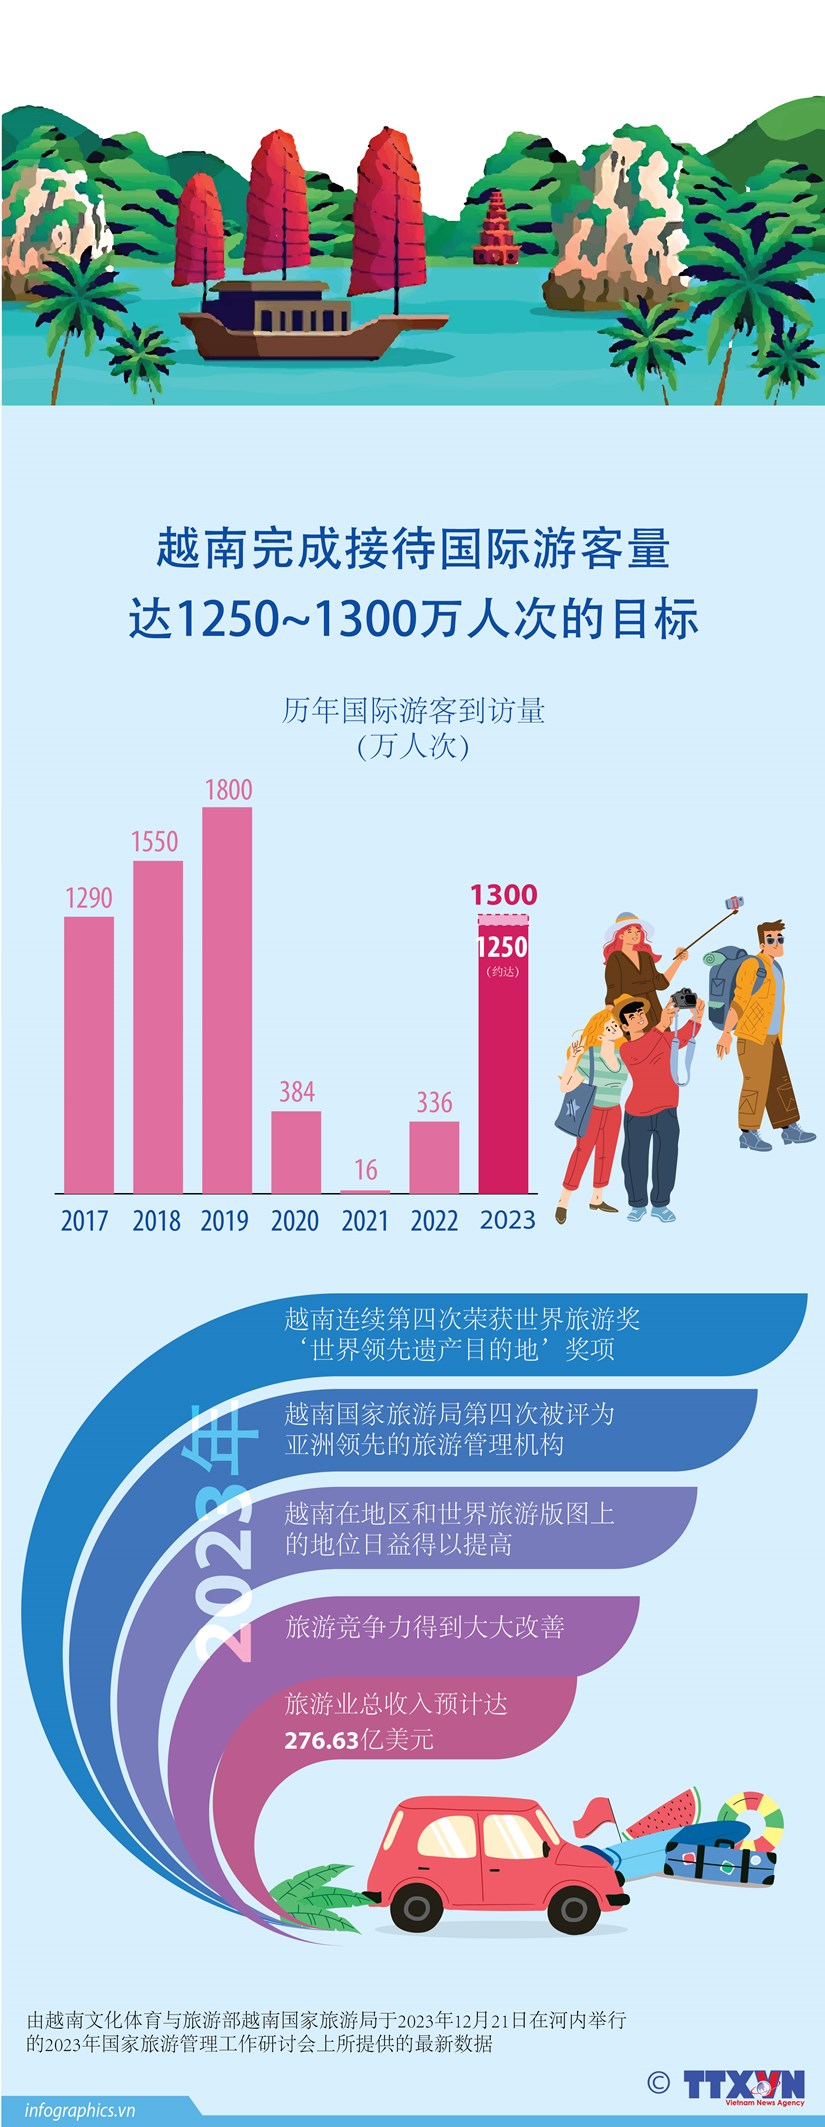 图表新闻：越南完成接待国际游客量 达1250~1300万人次的目标 hinh anh 1